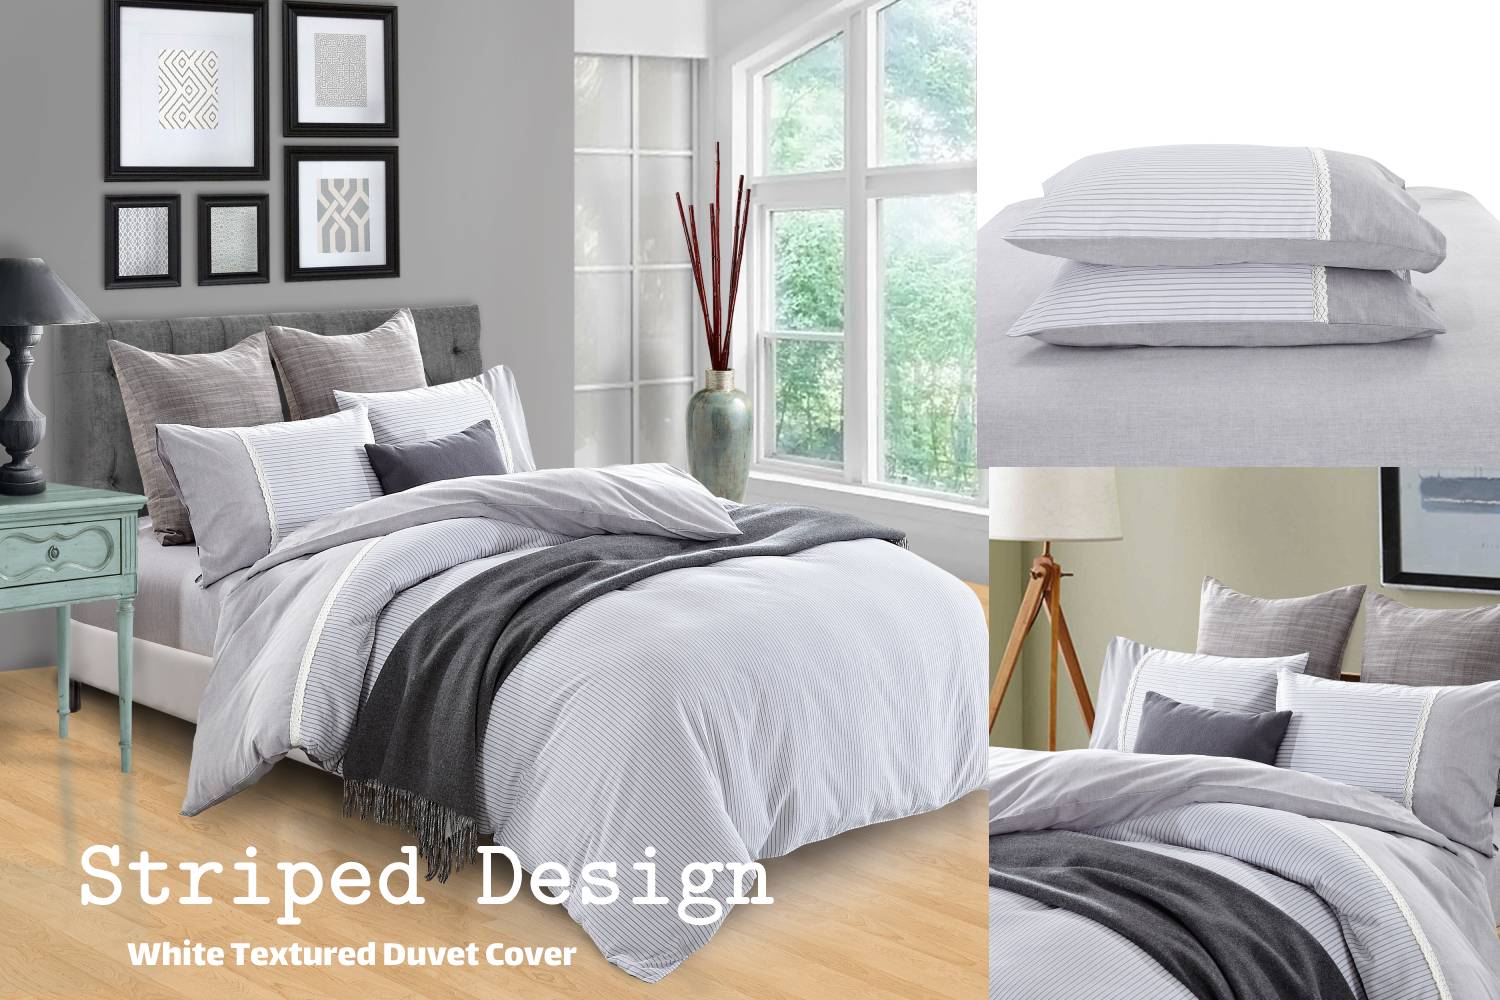 Striped design: White textured duvet cover